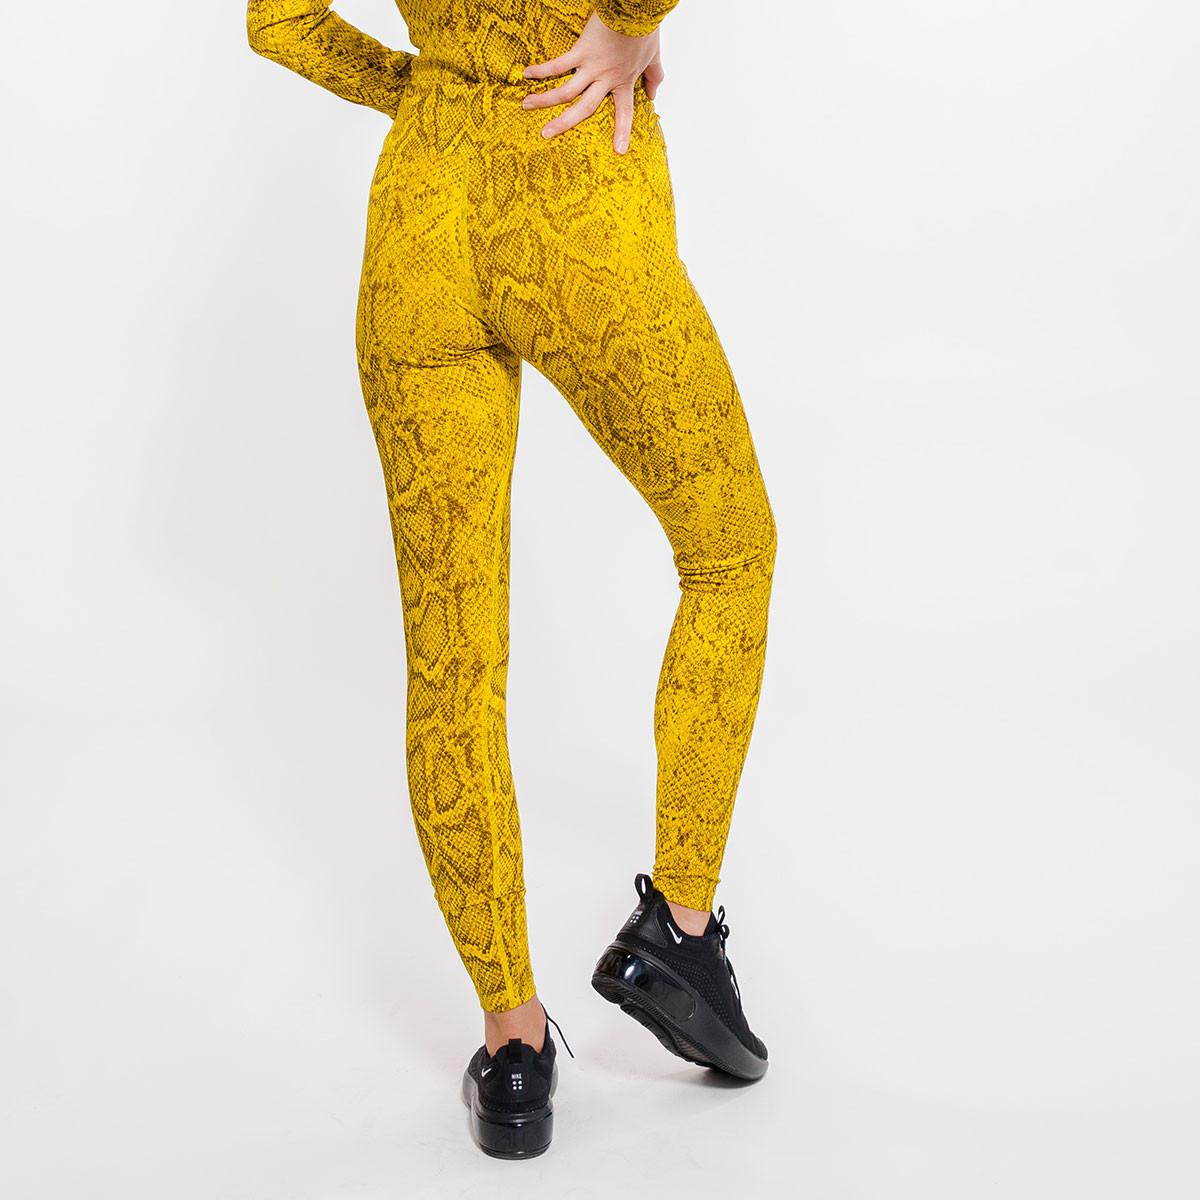 yellow python nike leggings